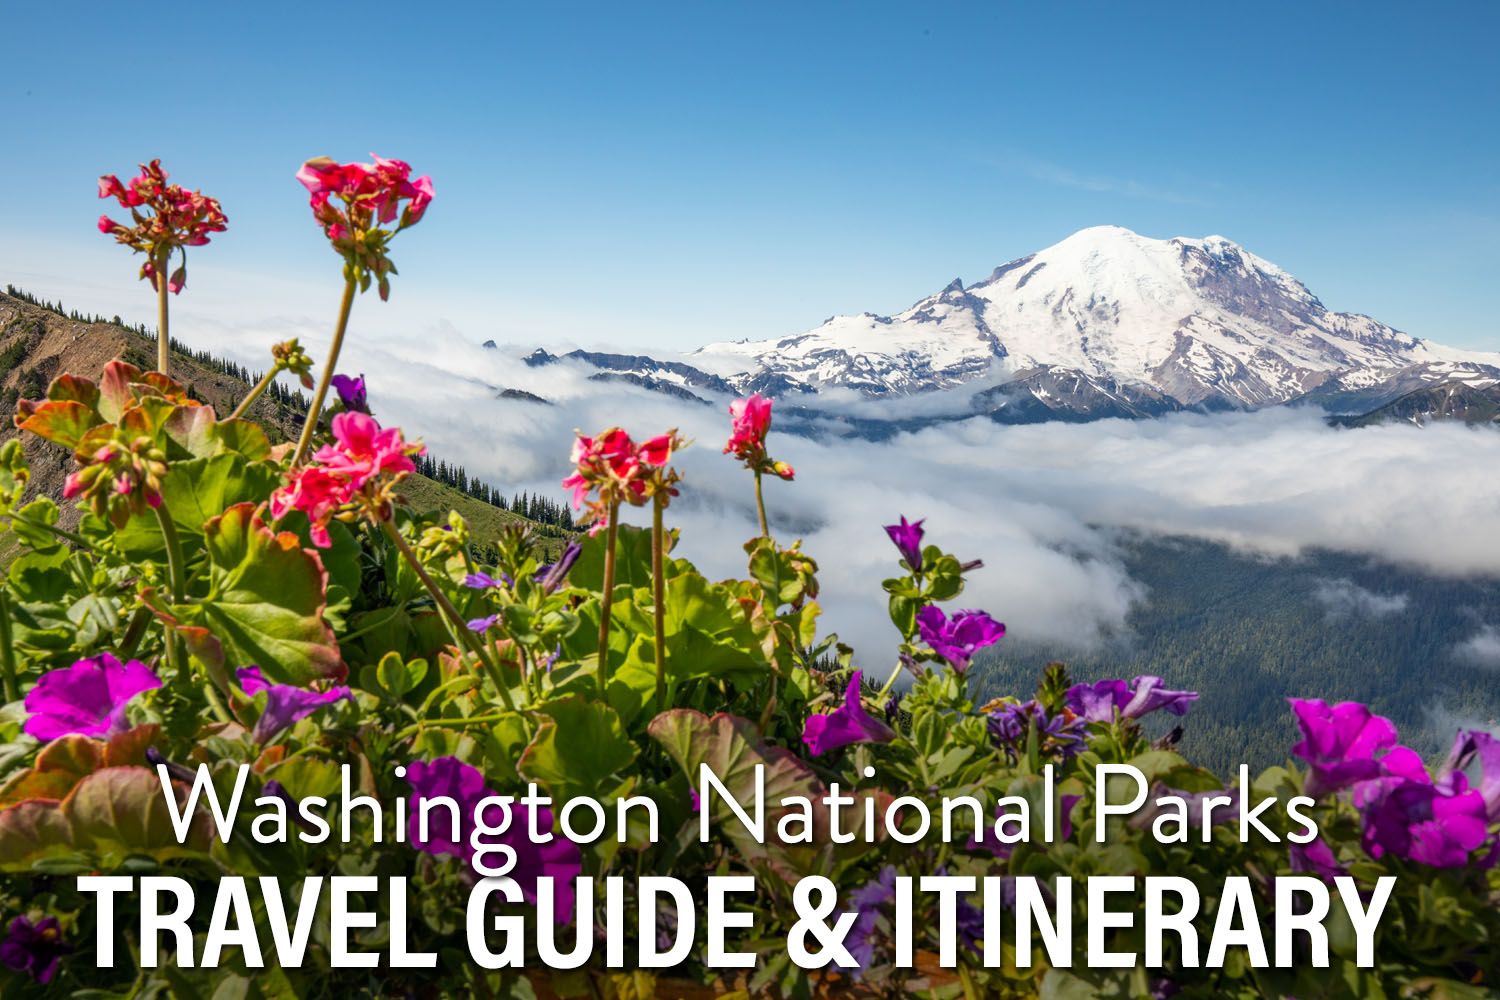 Washington National Parks